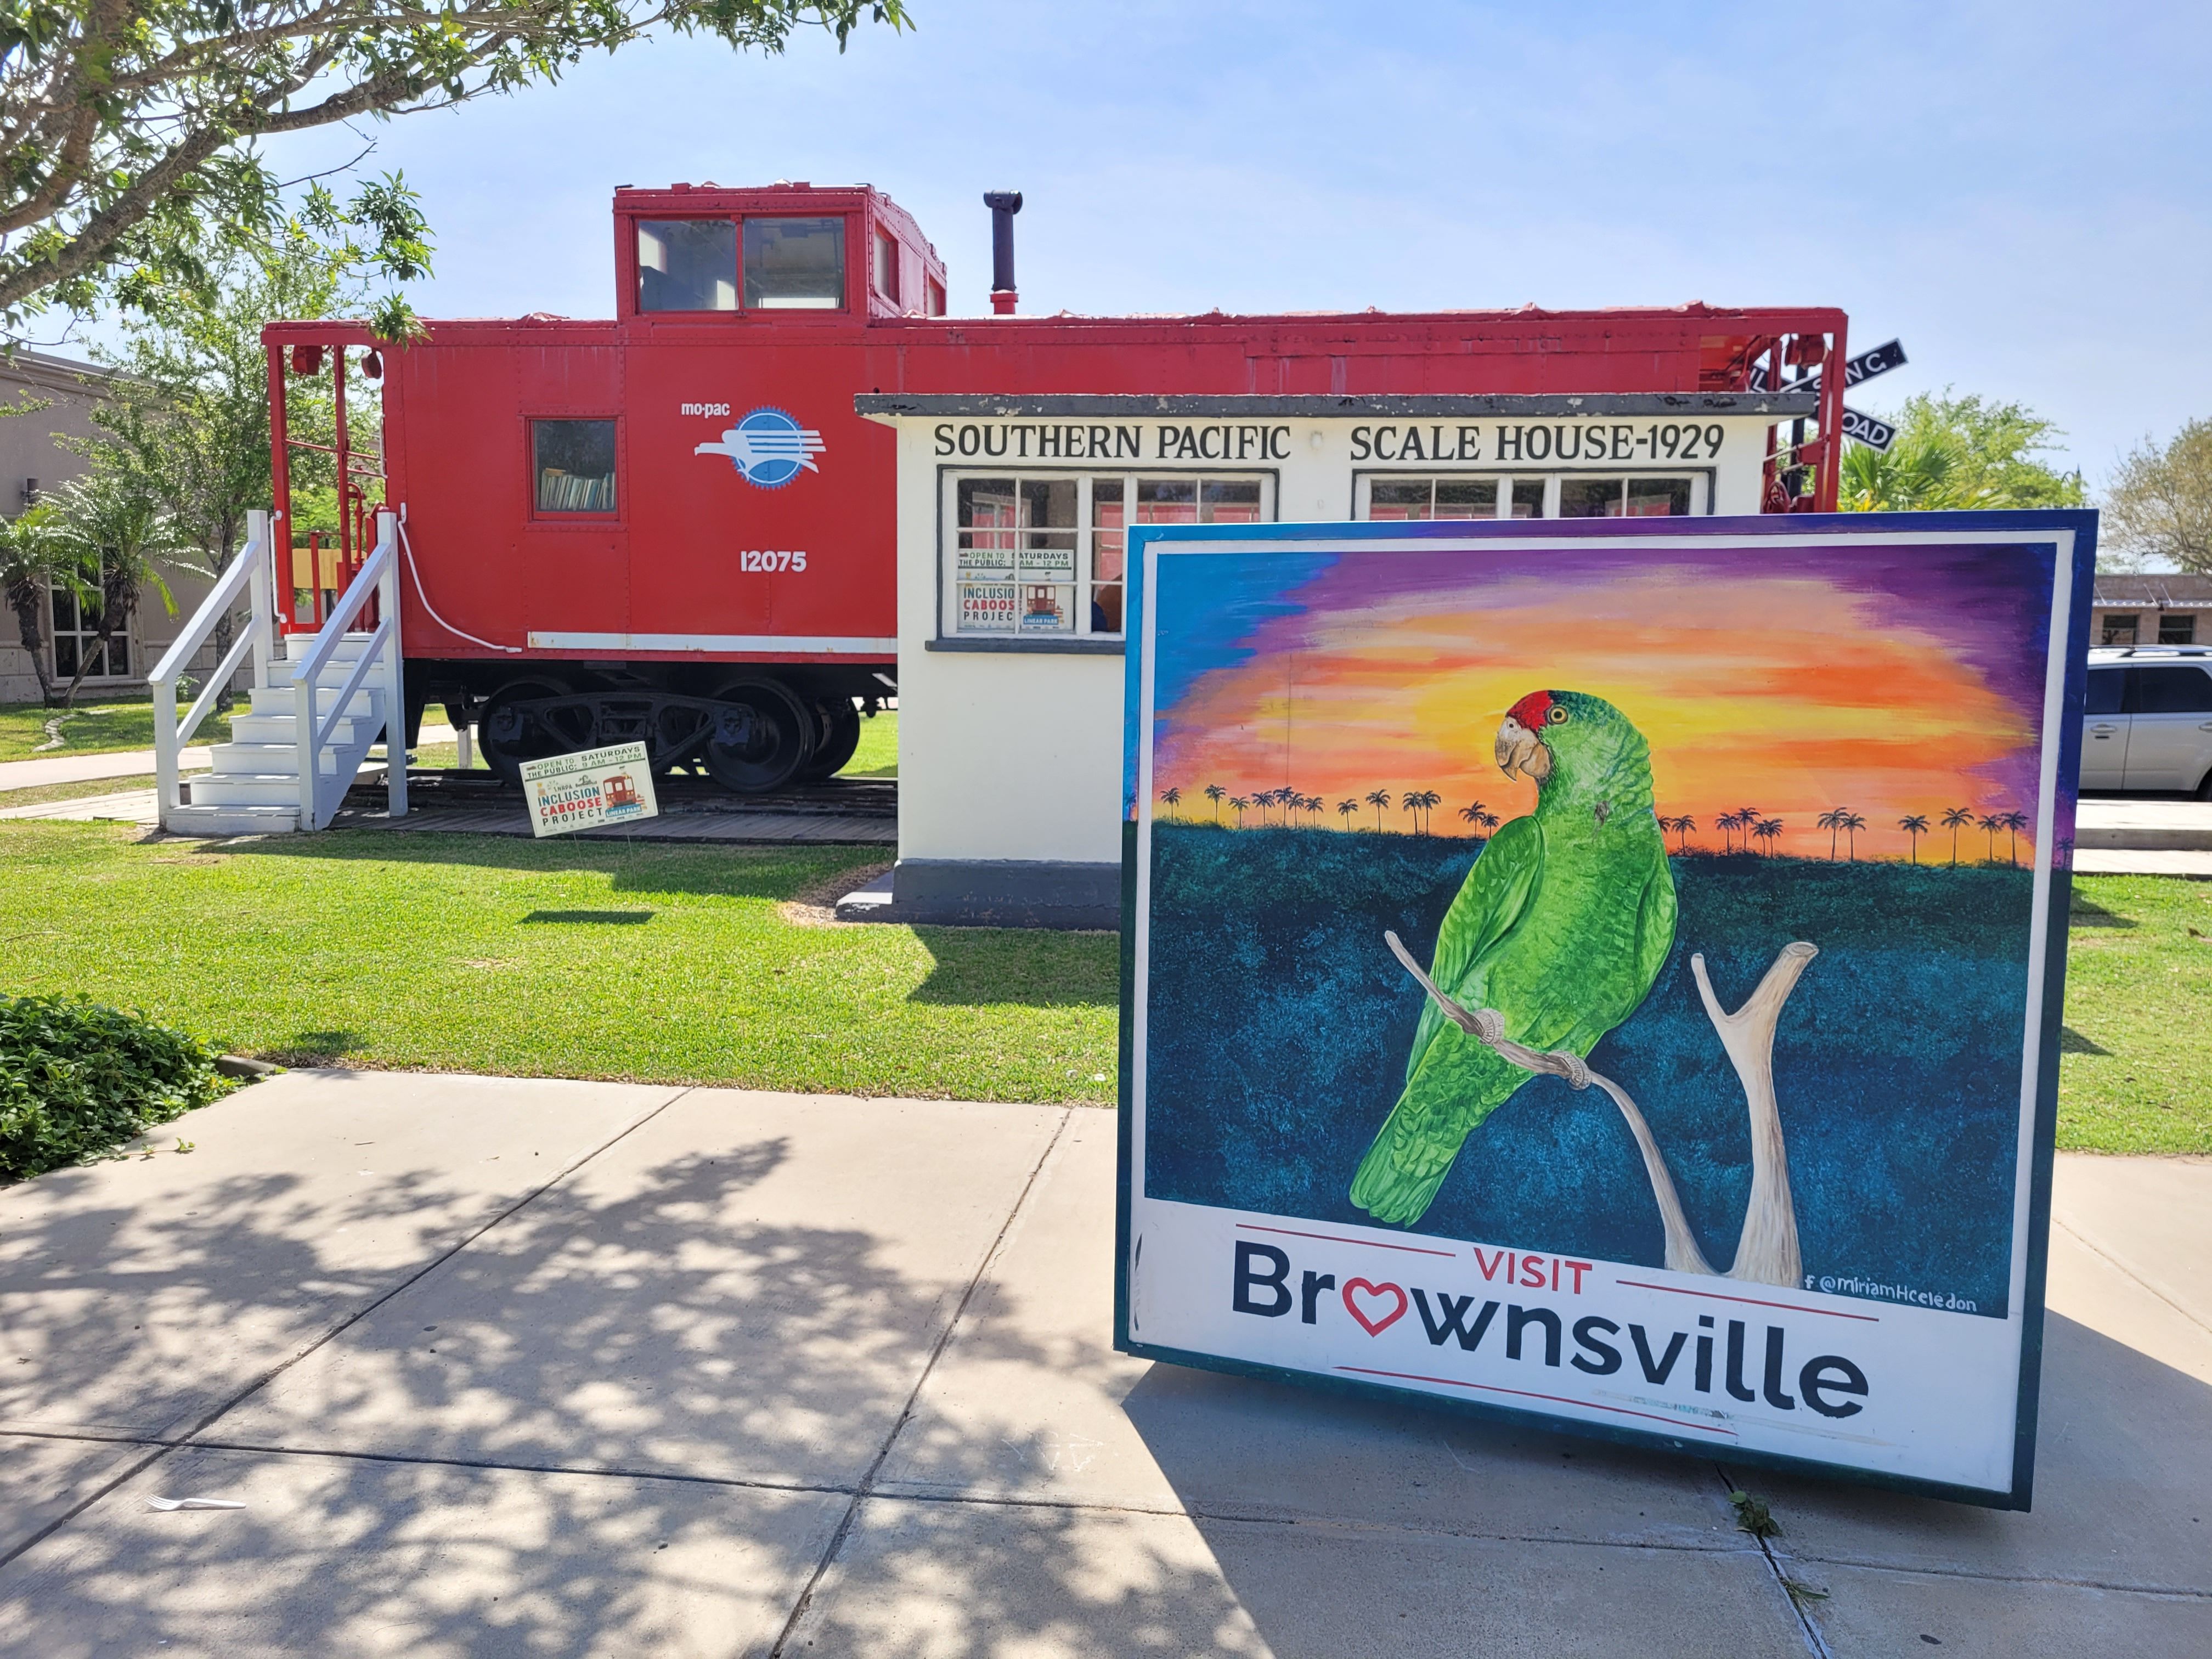 Cartel de Visit Brownsville con una locomotora detrás.